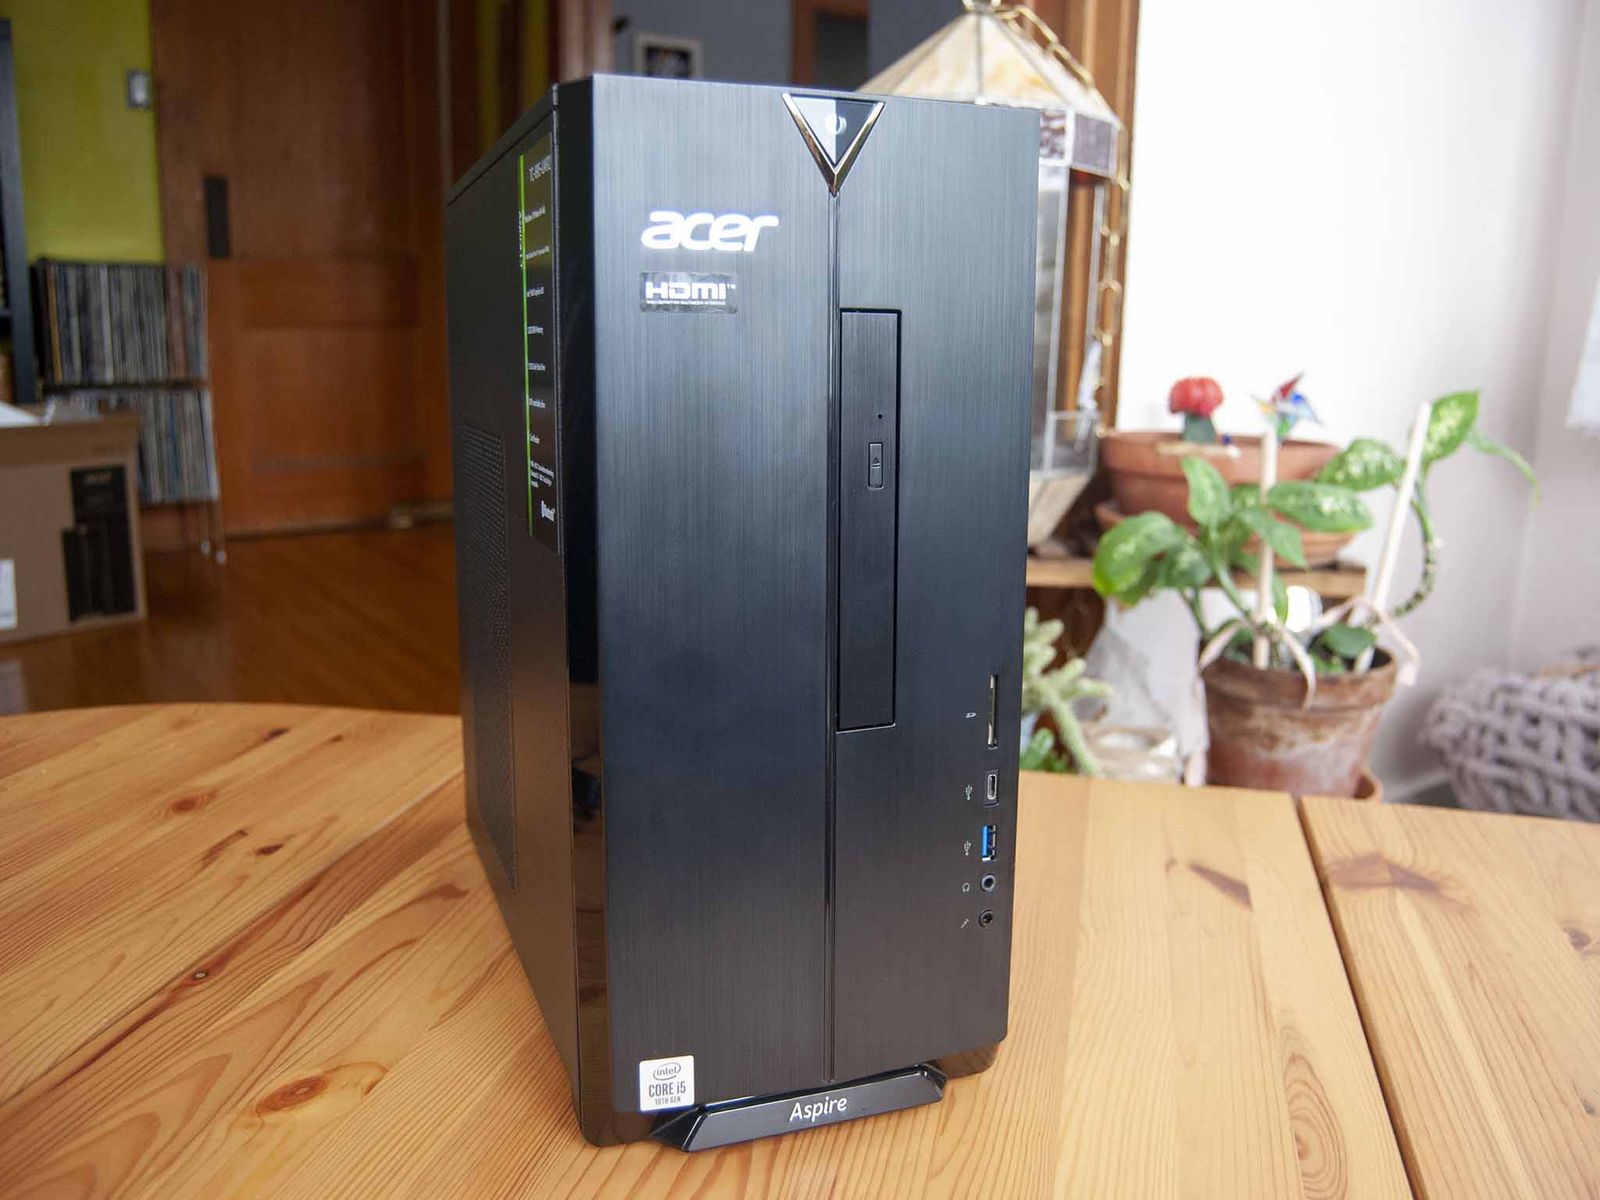 Acer Aspire Tc 895 Review